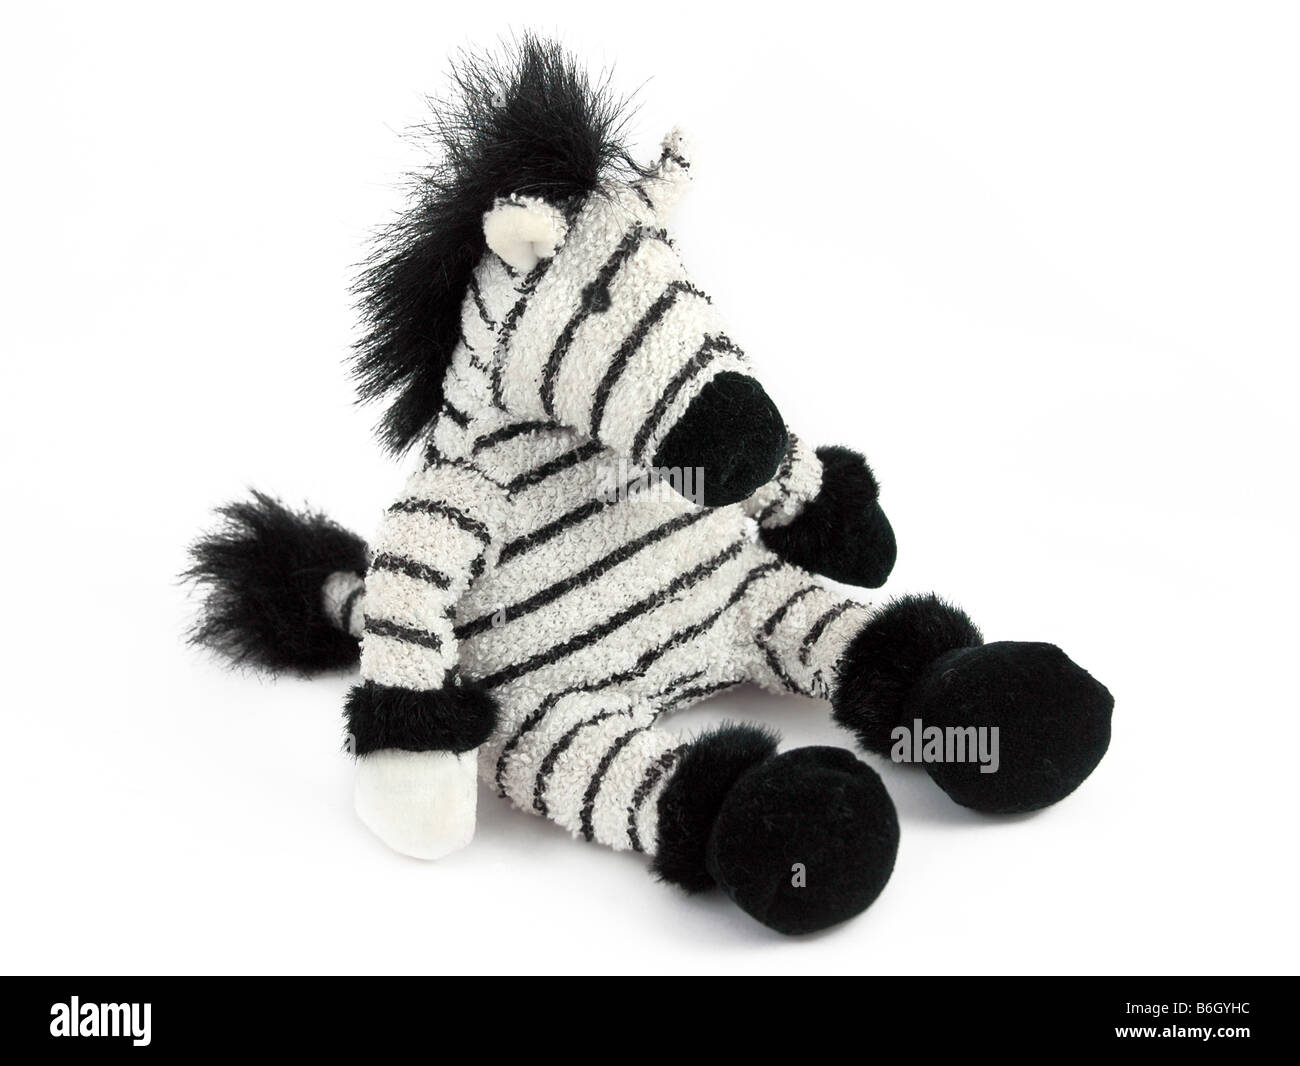 A zebra soft toy. Stock Photo